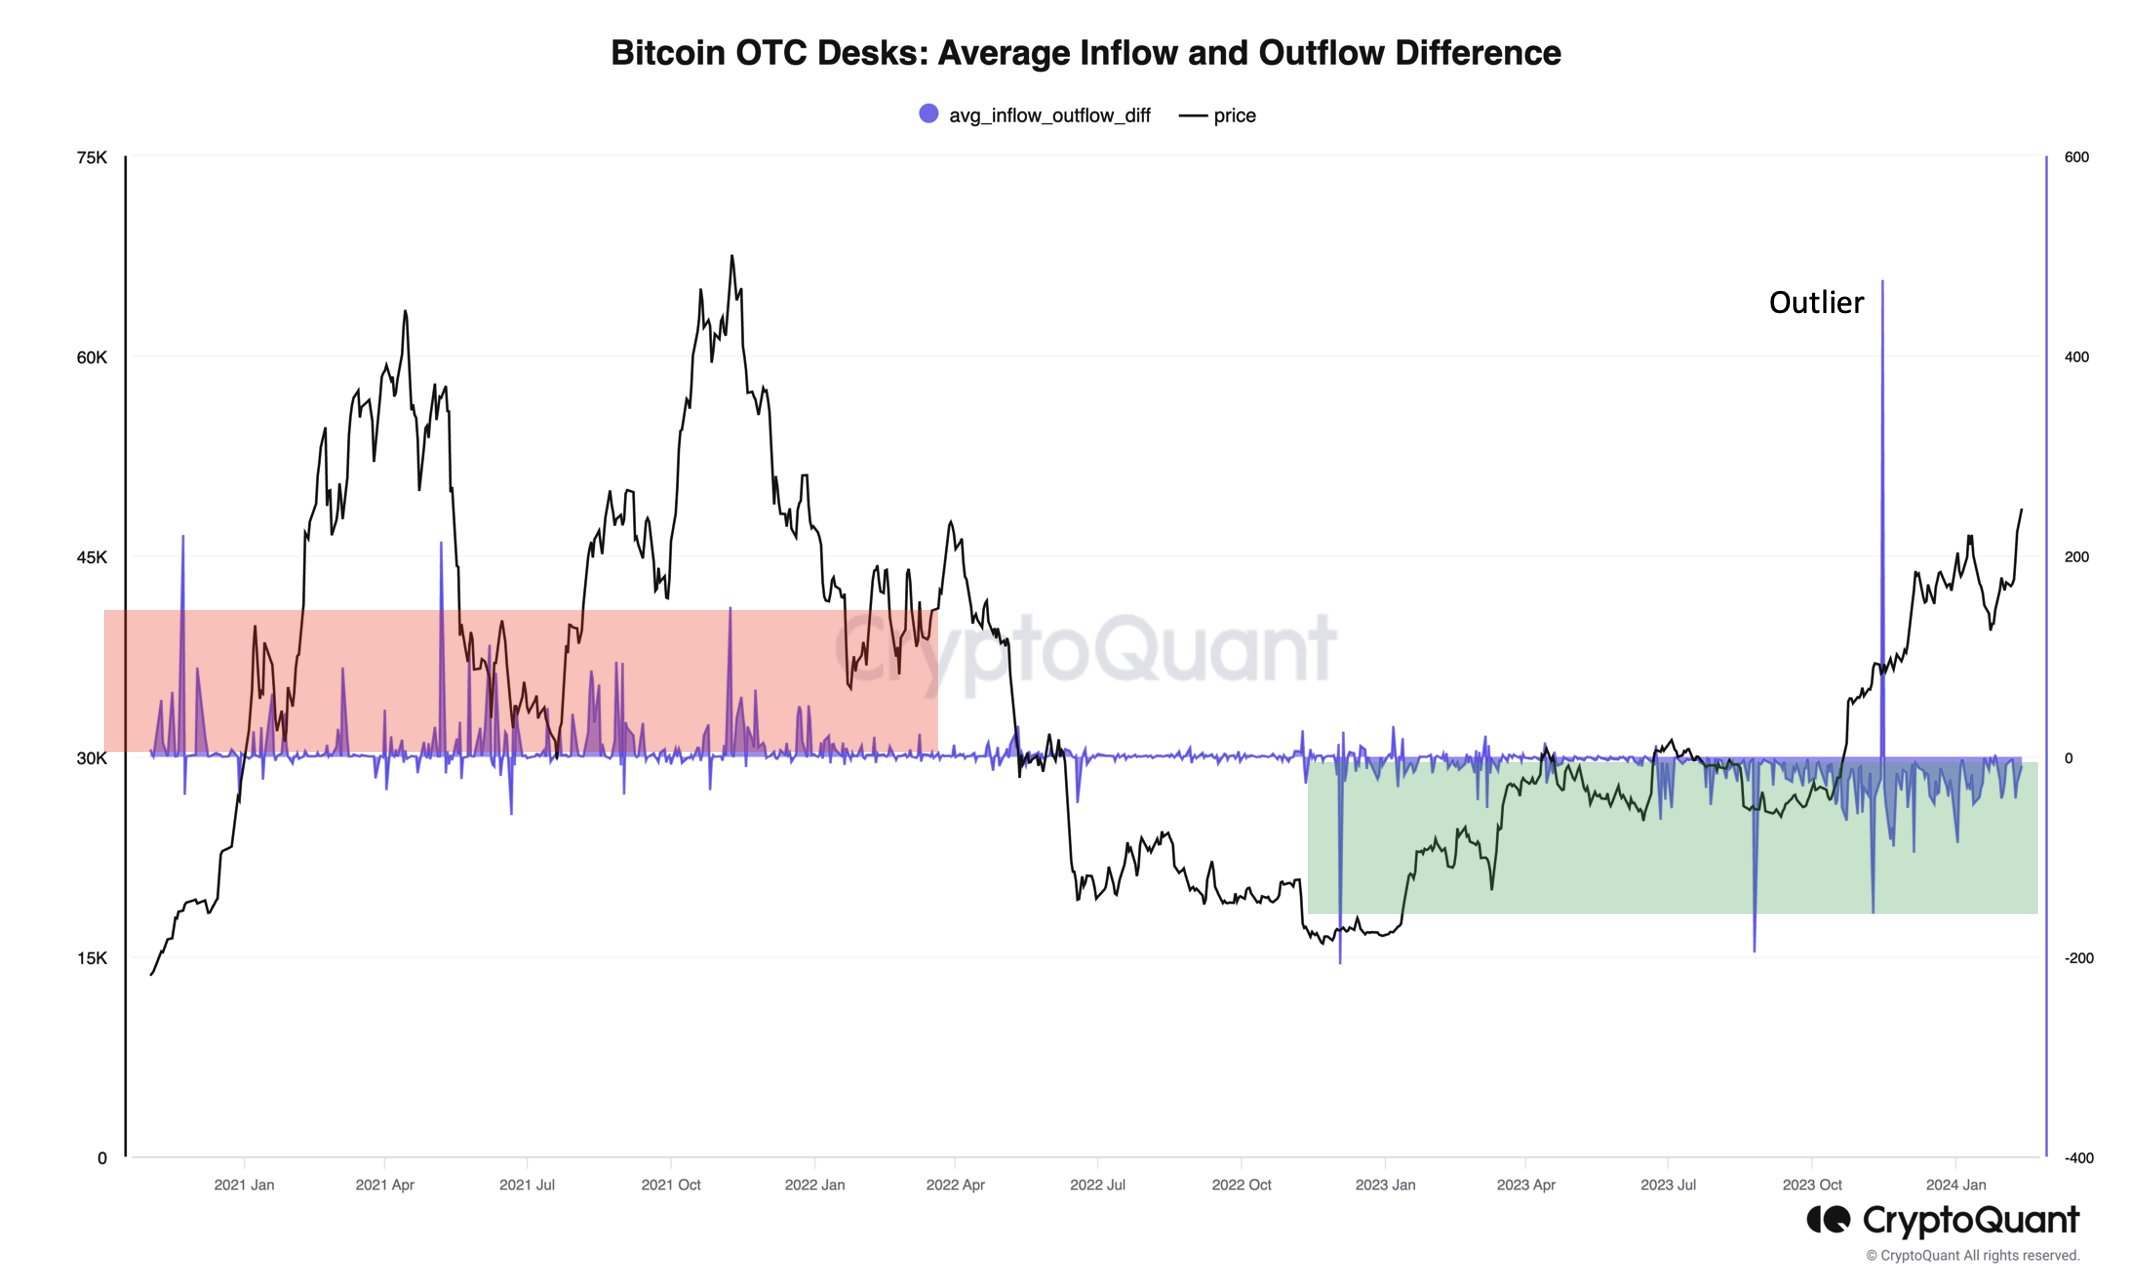 Bitcoin OTC flows